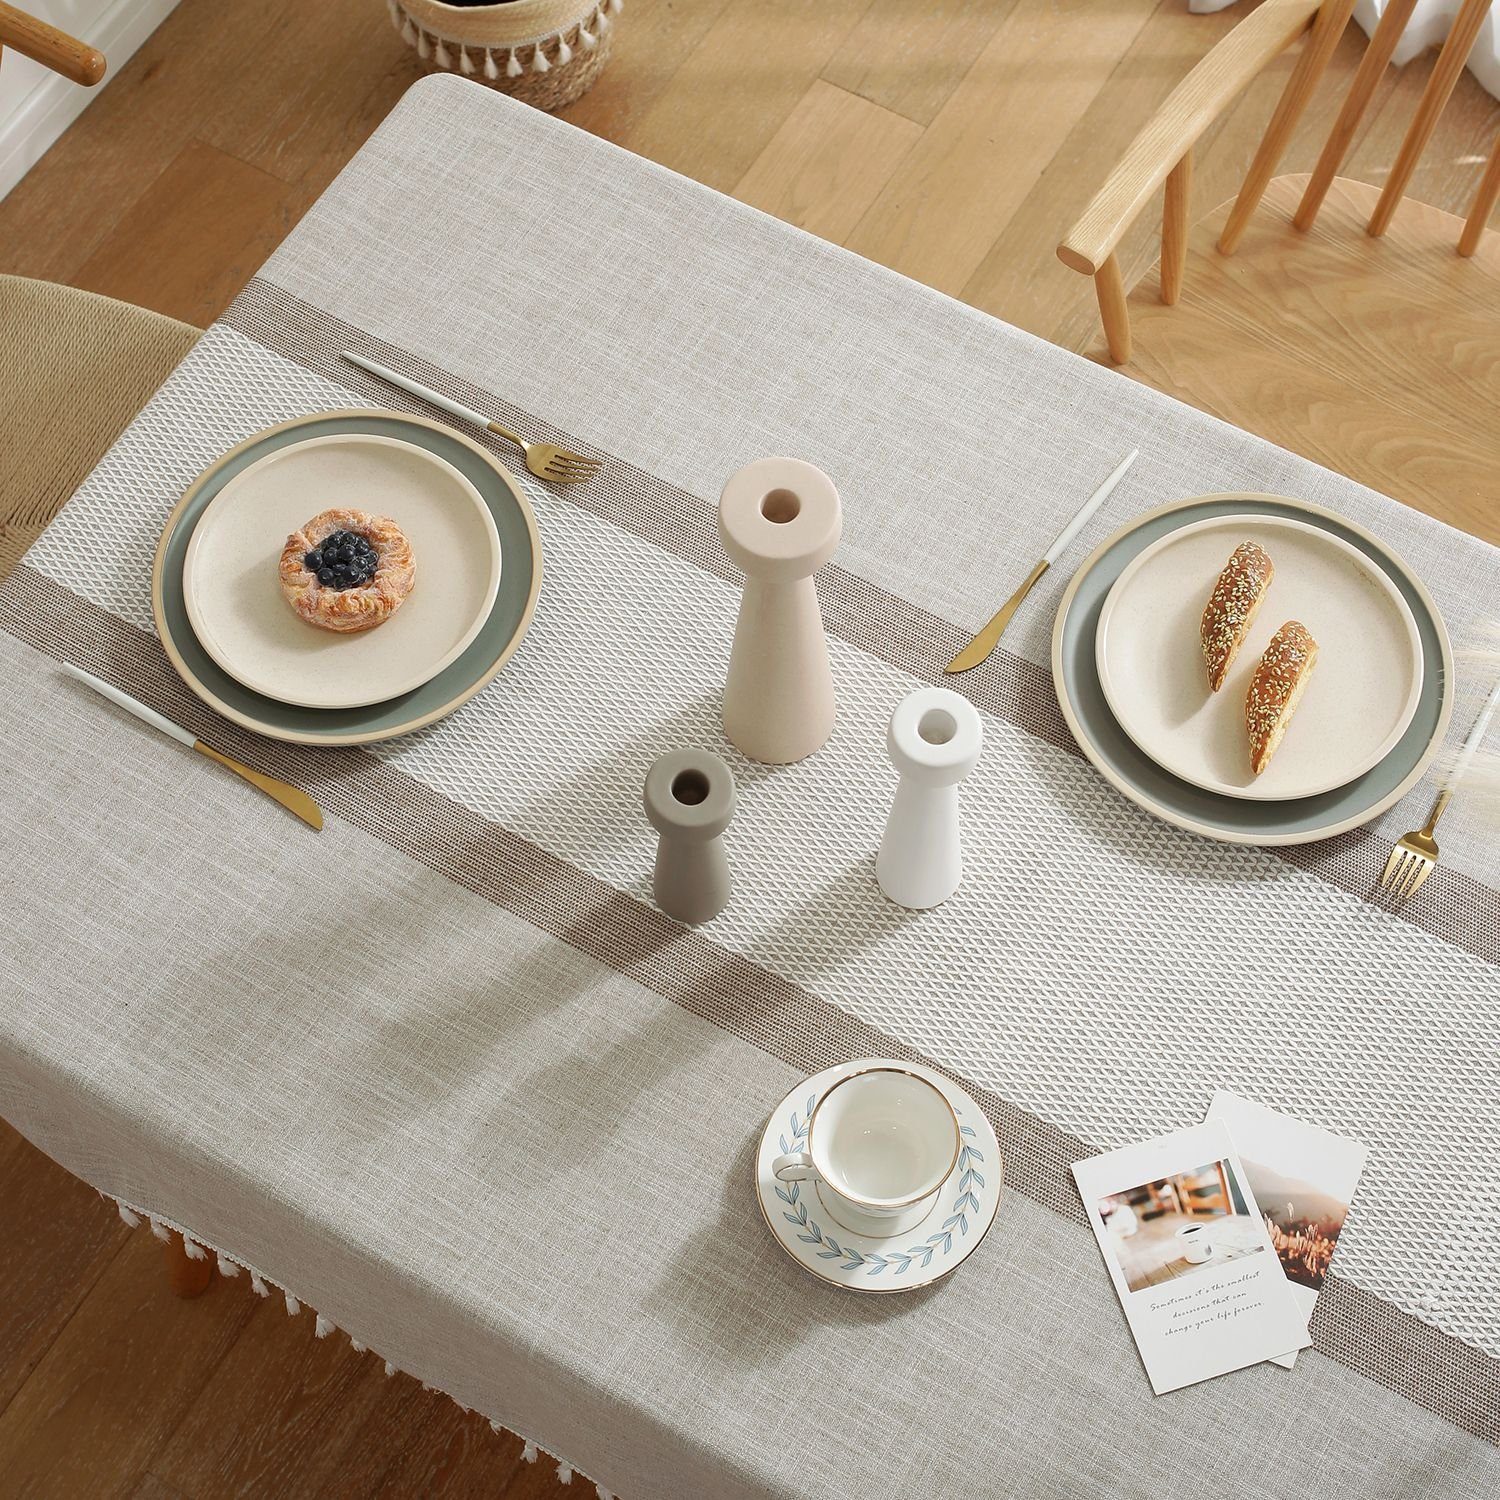 FELIXLEO graue Tischdecken gestreifte Bauernhaus Tischdecke für 140*180cm Esstisch Küche